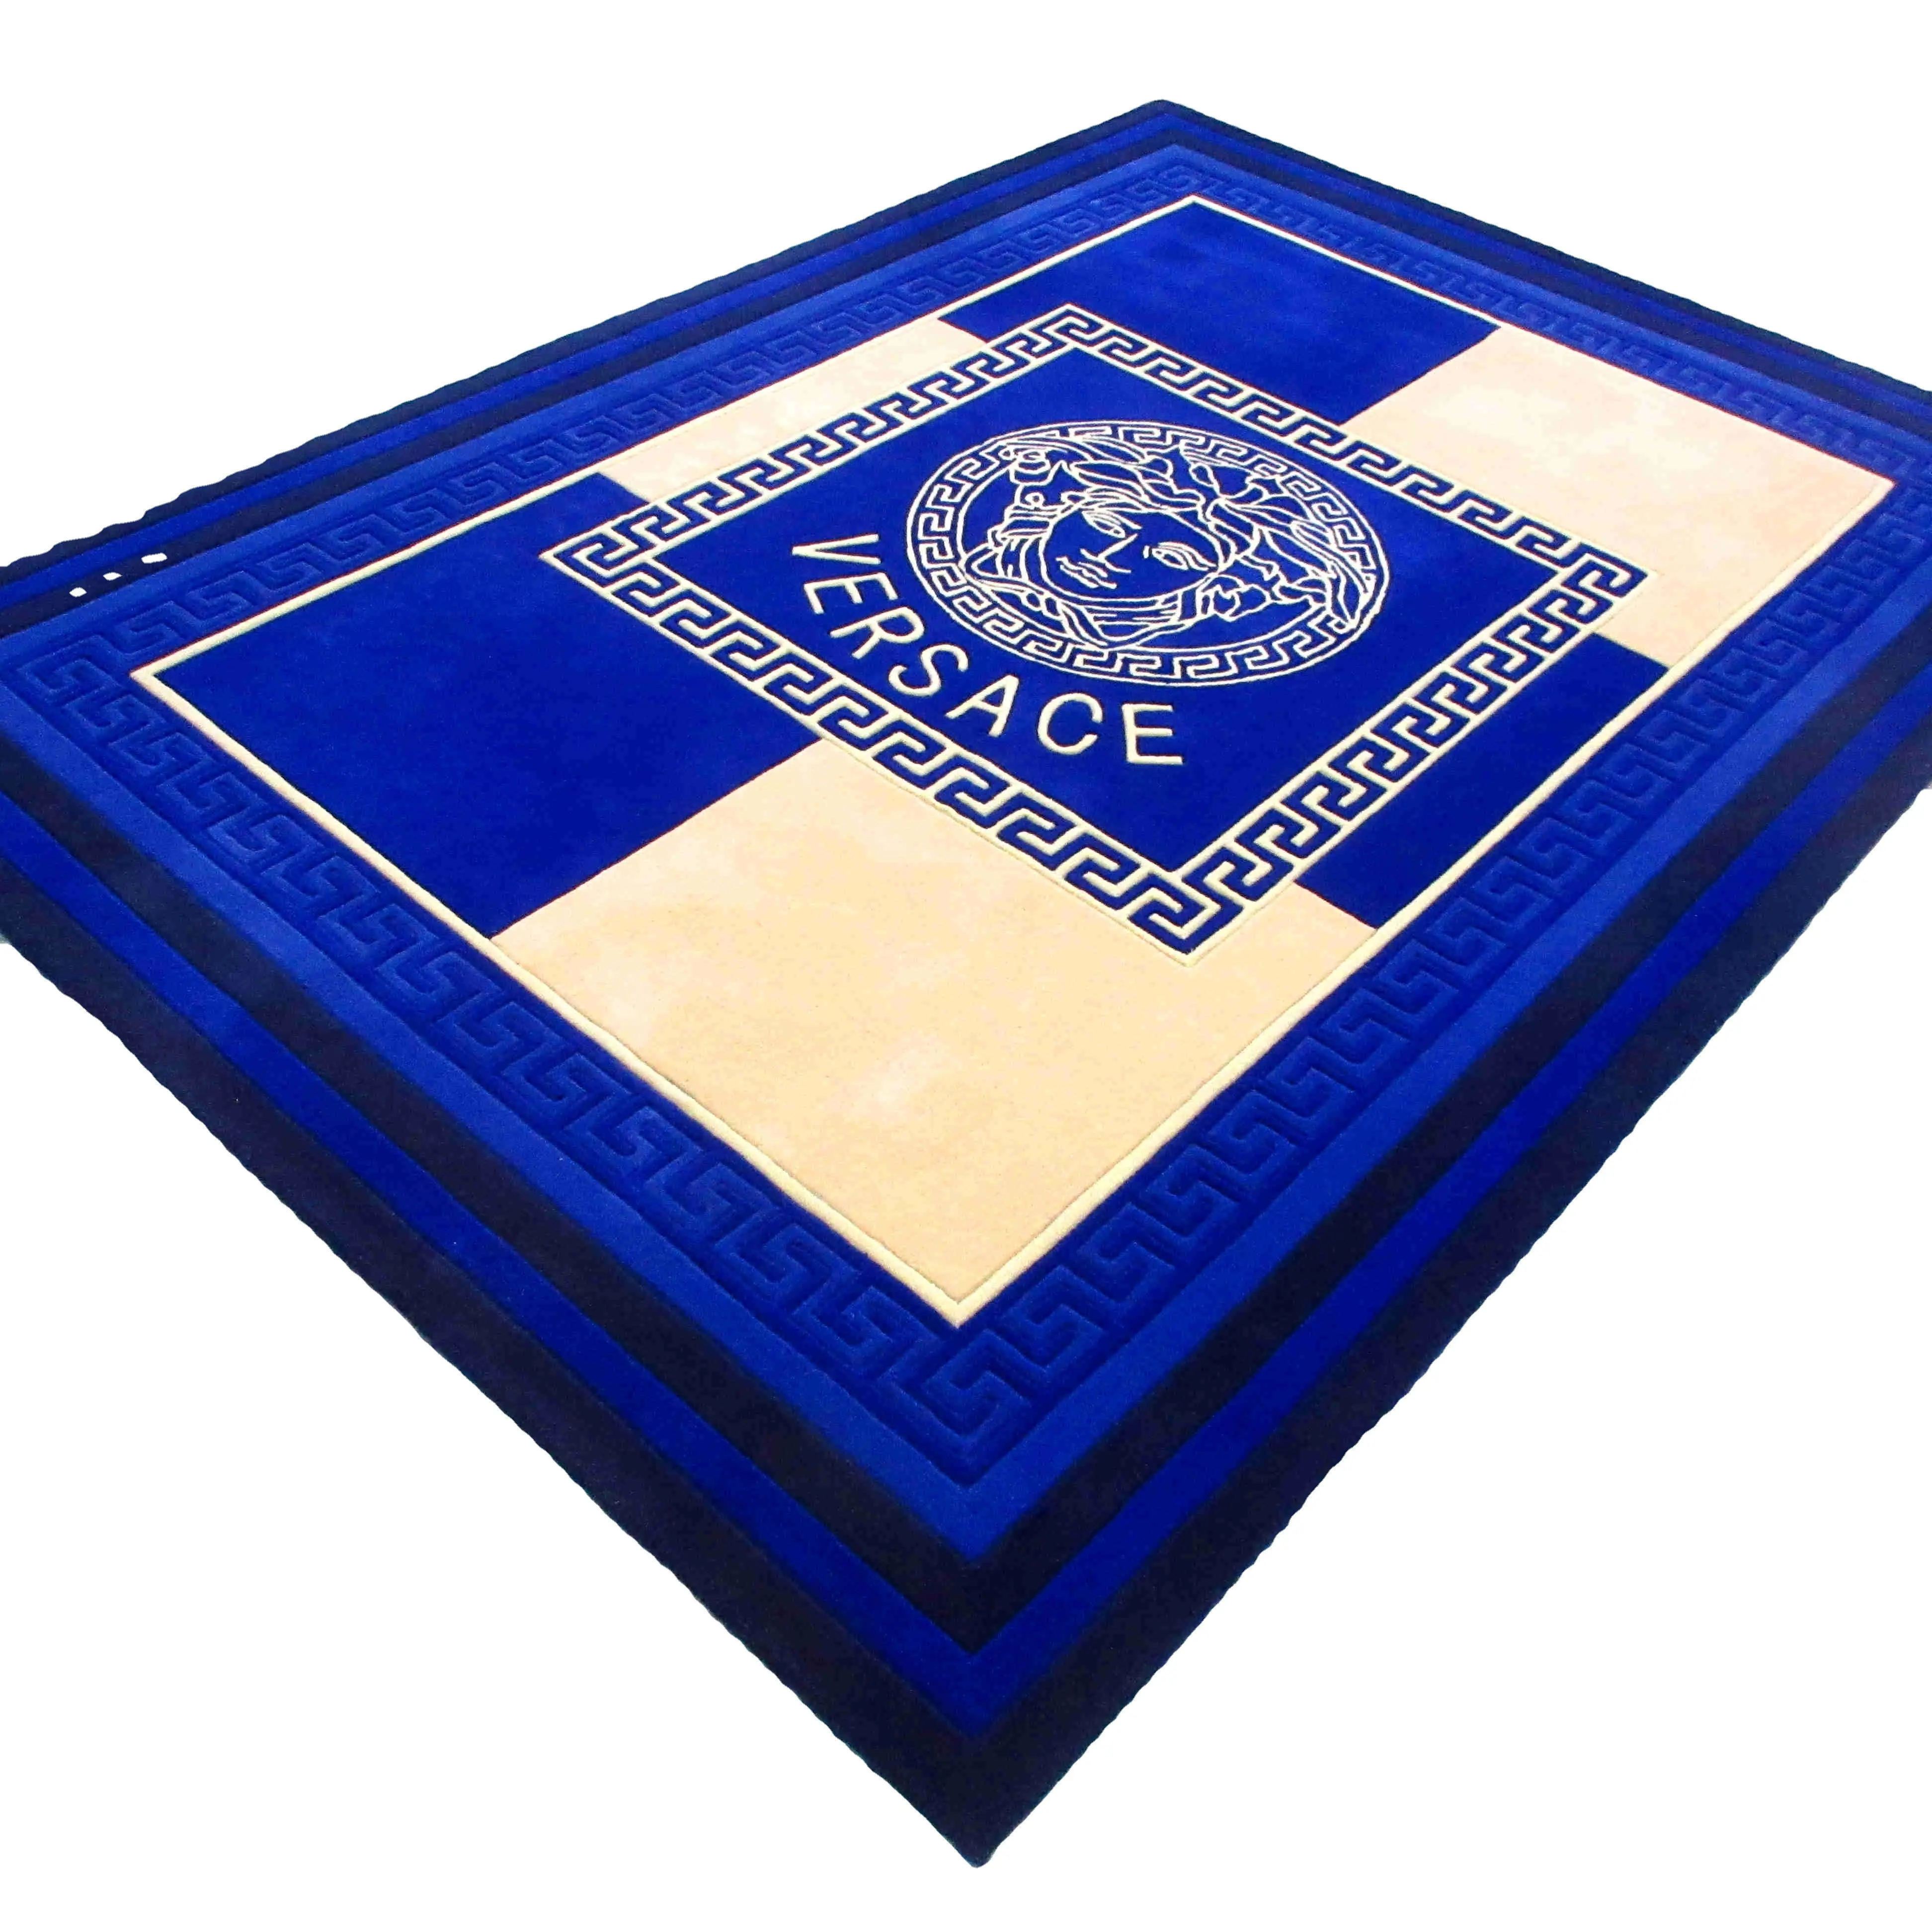 Blau Beige Luxus Teppich nach Maß Hand gefertigt Belgien Wohnzimmer Teppiche Hand getuftete geknotete Wollte ppiche